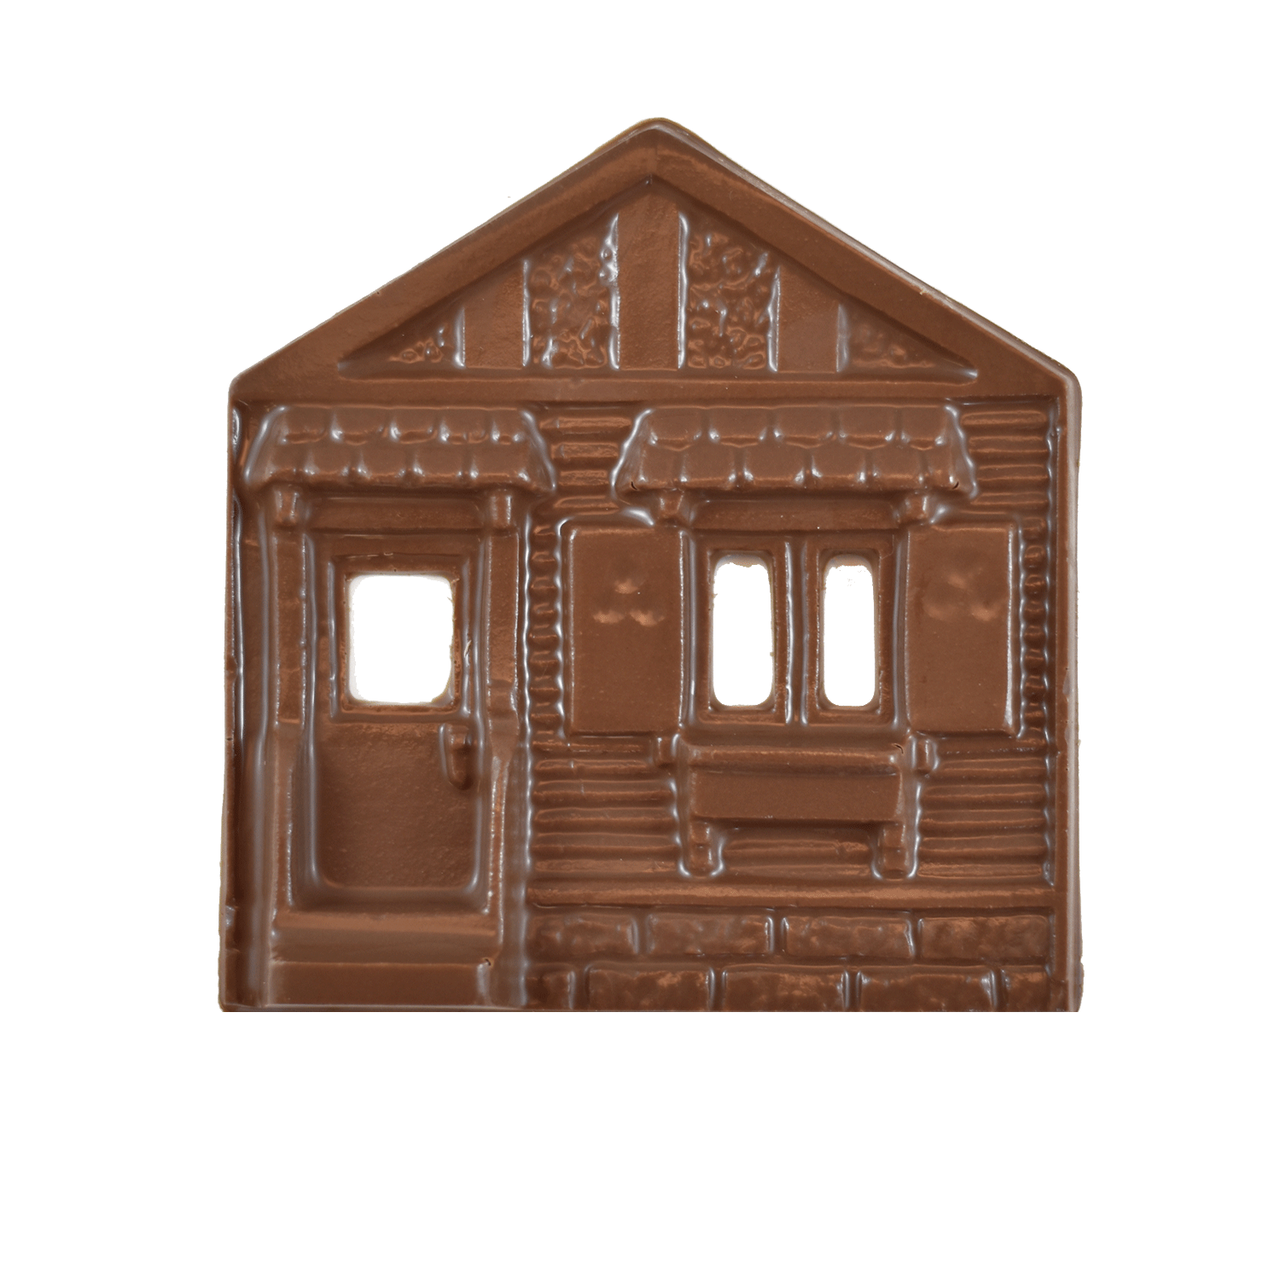 3D Chocolate House - 77